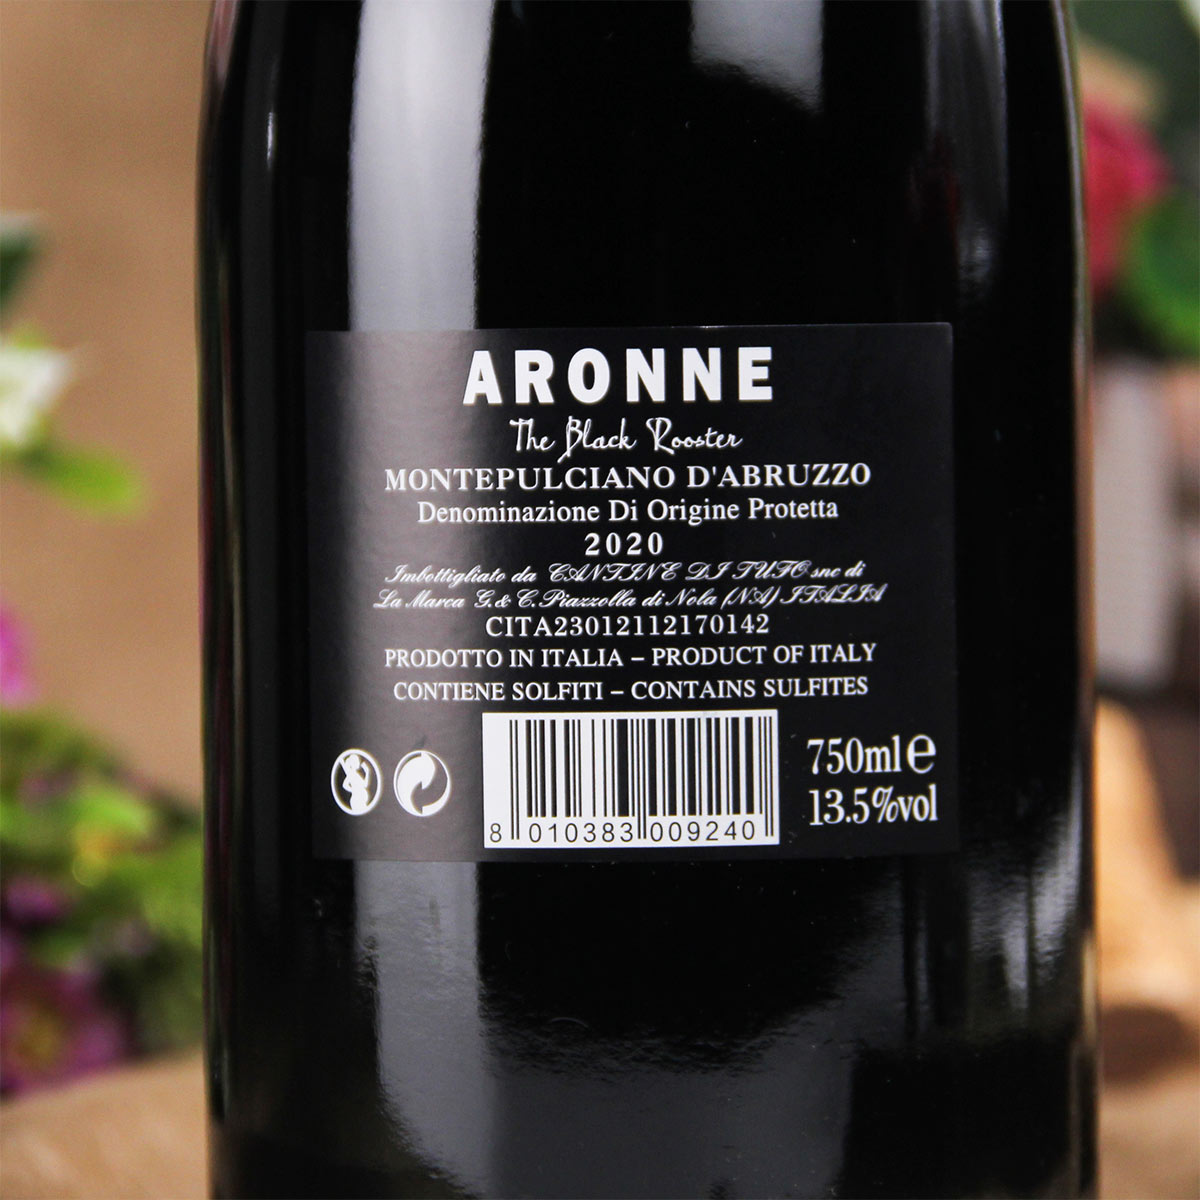 意大利阿布鲁左阿罗尼黑公鸡酒庄Aronne-阿罗尼黑公鸡干红葡萄酒